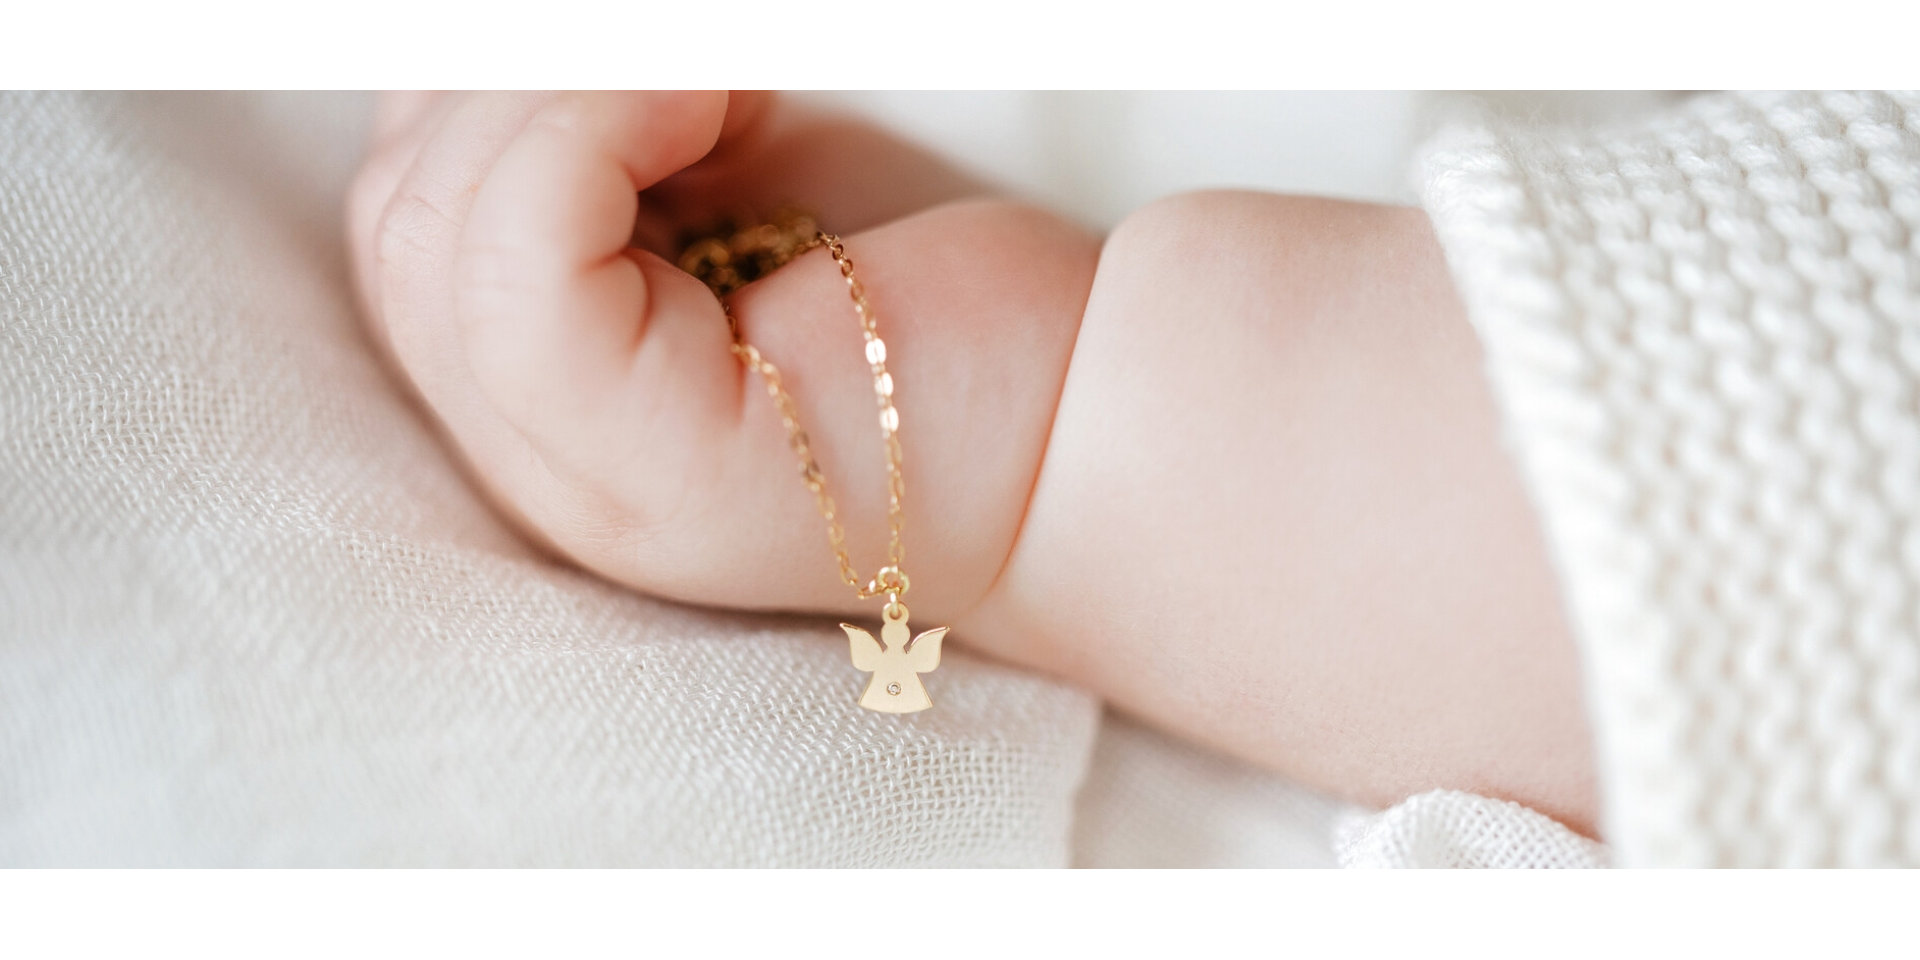 První symbolický šperk pro vašeho drobečka